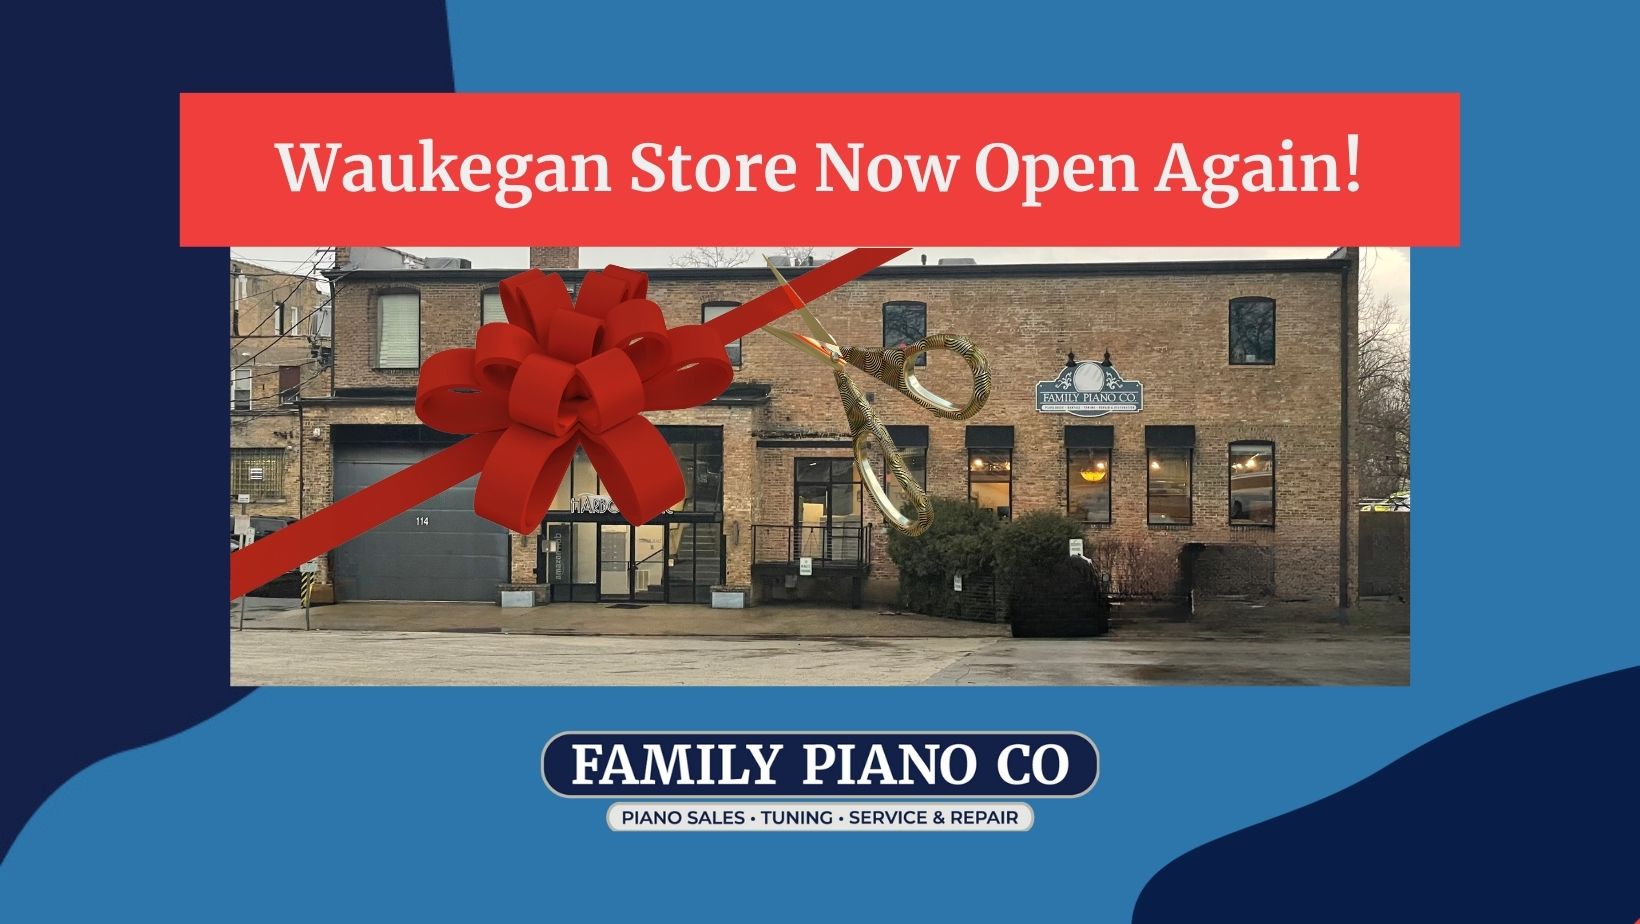 Family Piano's Waukegan Store Reopening